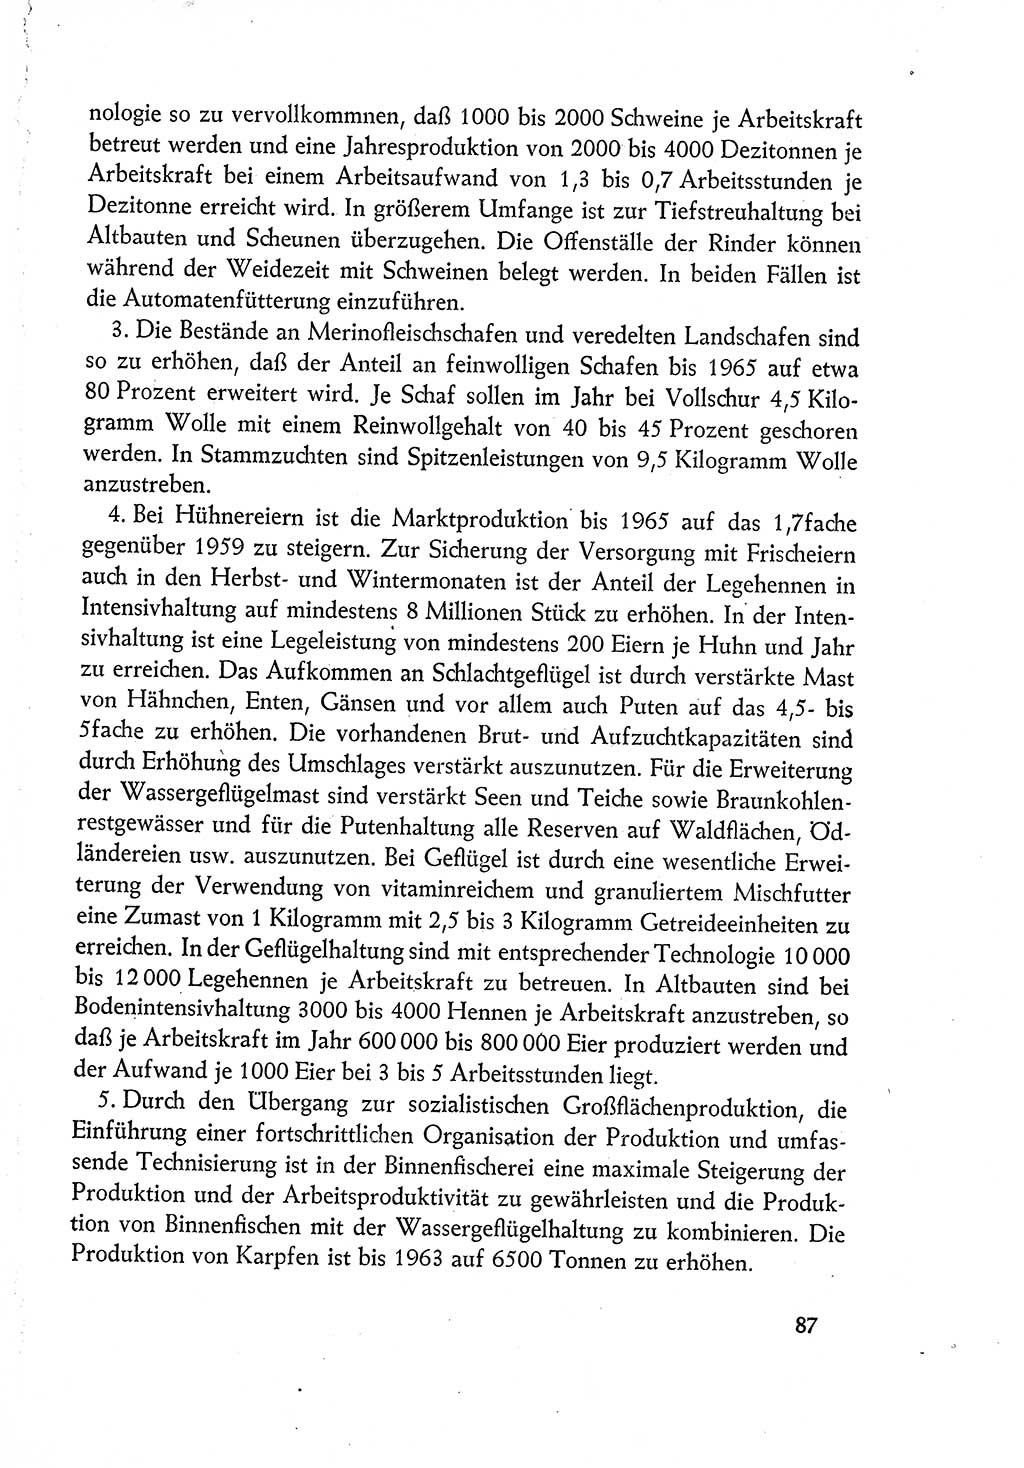 Dokumente der Sozialistischen Einheitspartei Deutschlands (SED) [Deutsche Demokratische Republik (DDR)] 1960-1961, Seite 87 (Dok. SED DDR 1960-1961, S. 87)